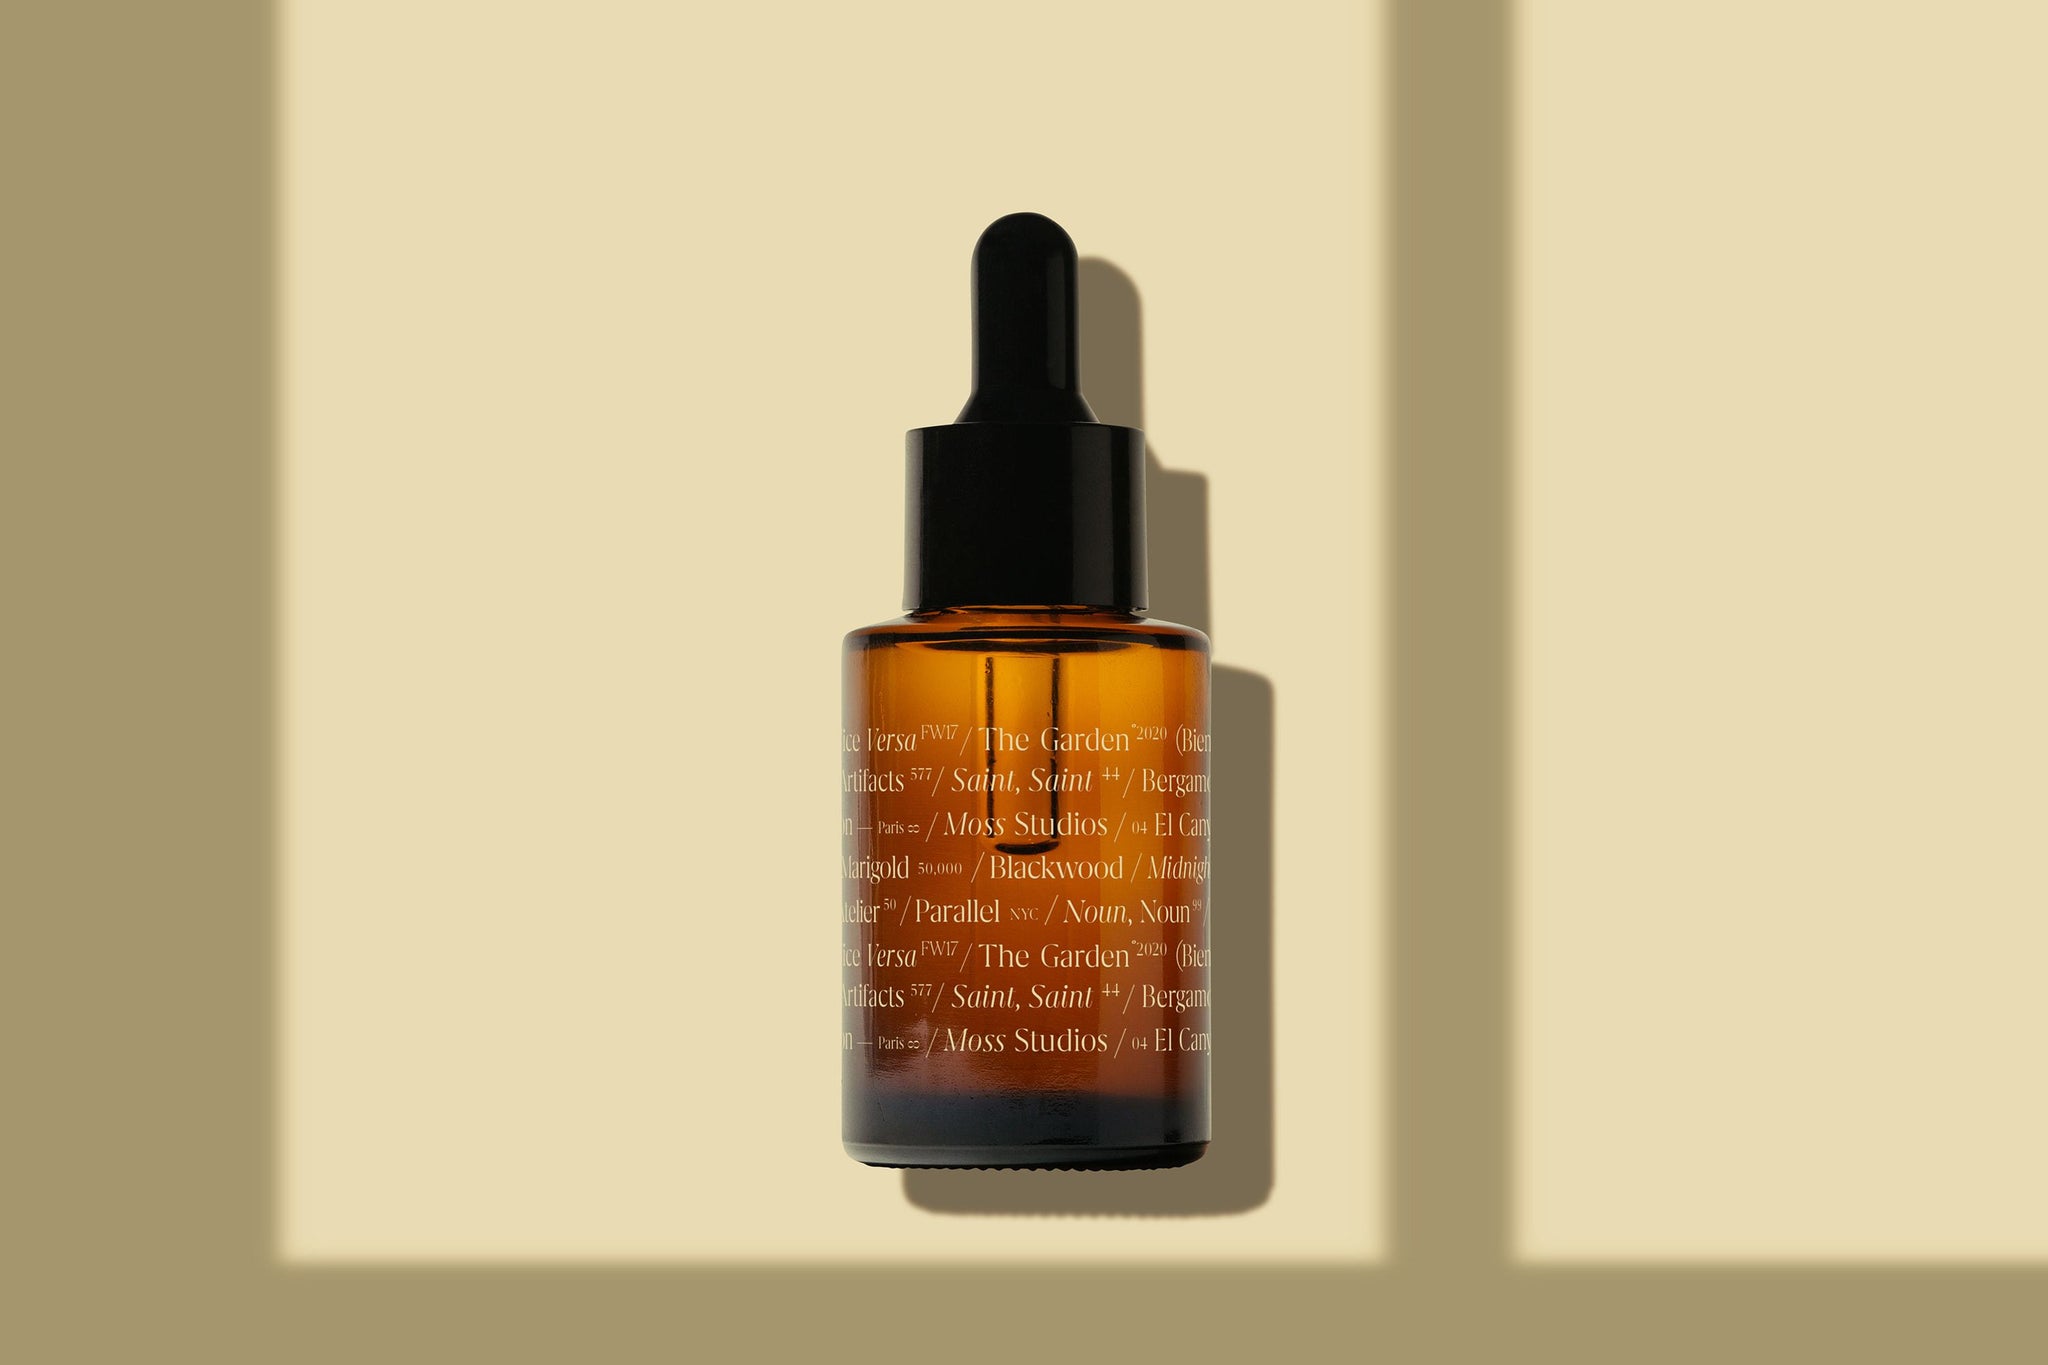 Amber Clear Dropper Bottle Mockup - Copal Studio Packaging Mockups For Designers